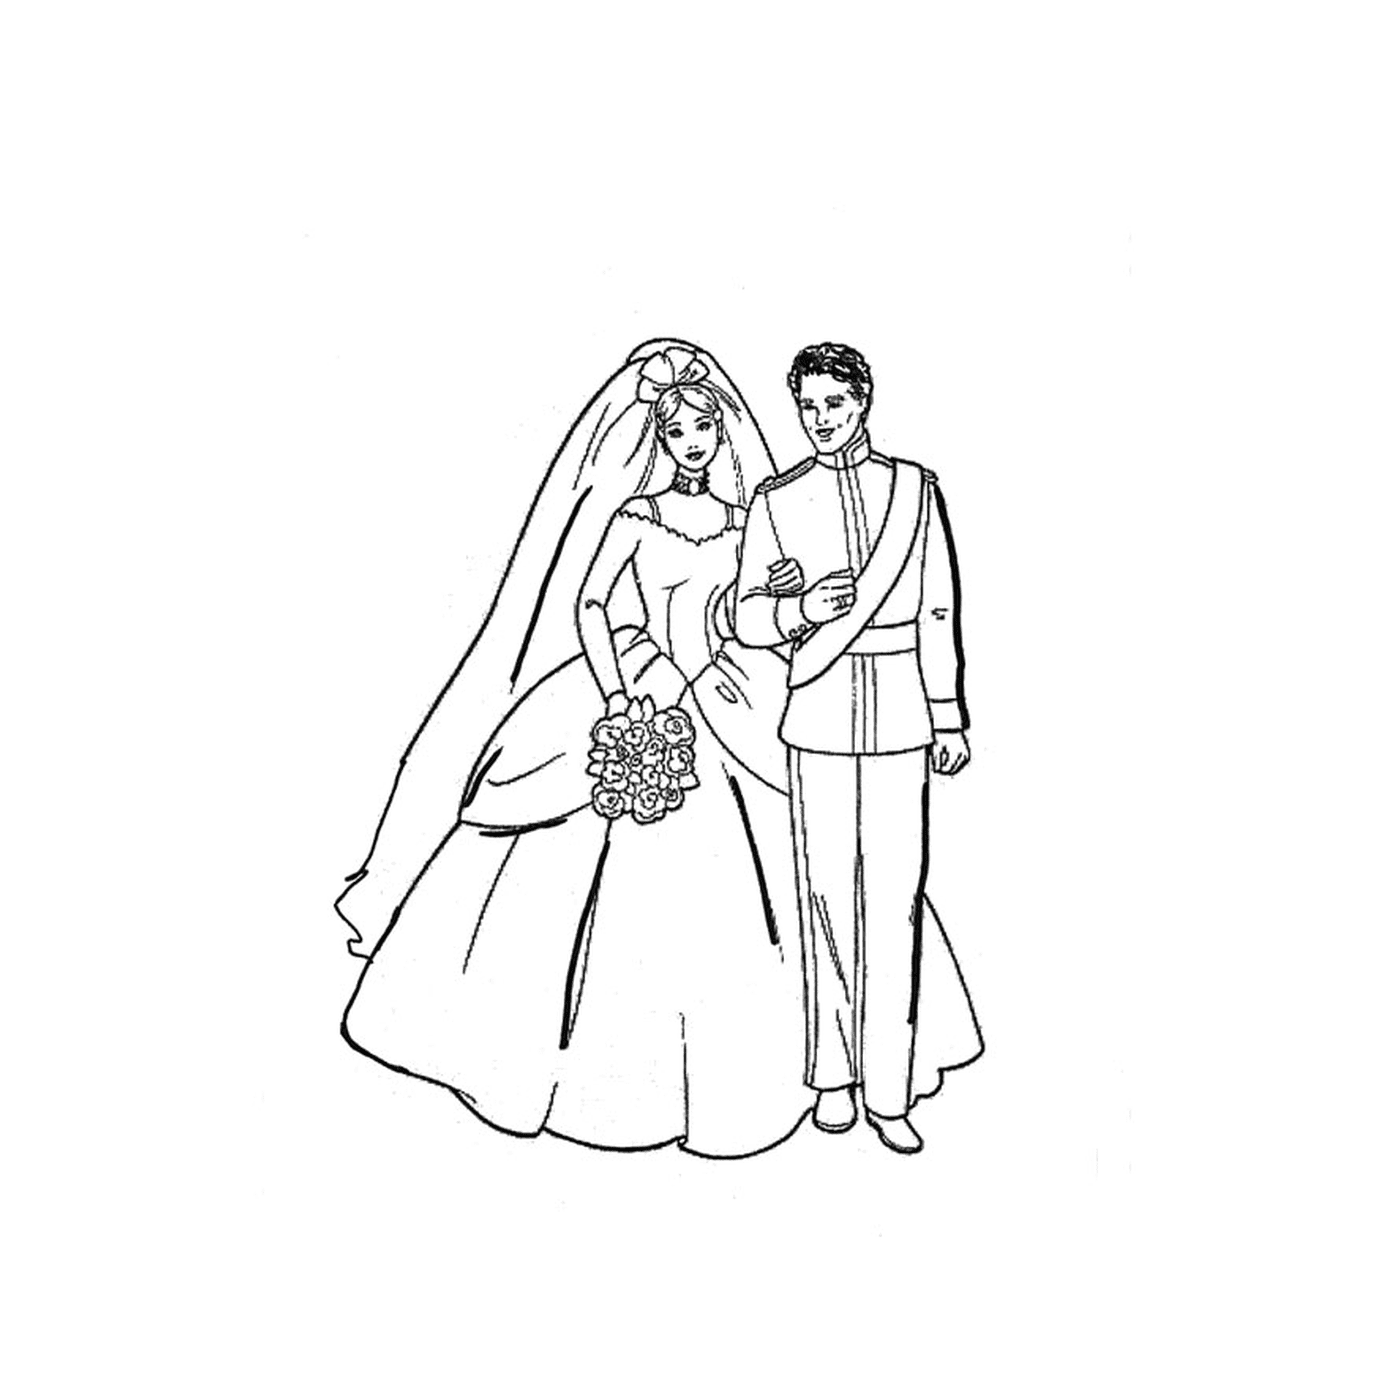  Ein Mann und eine Frau in einem Hochzeitskleid halten zusammen 